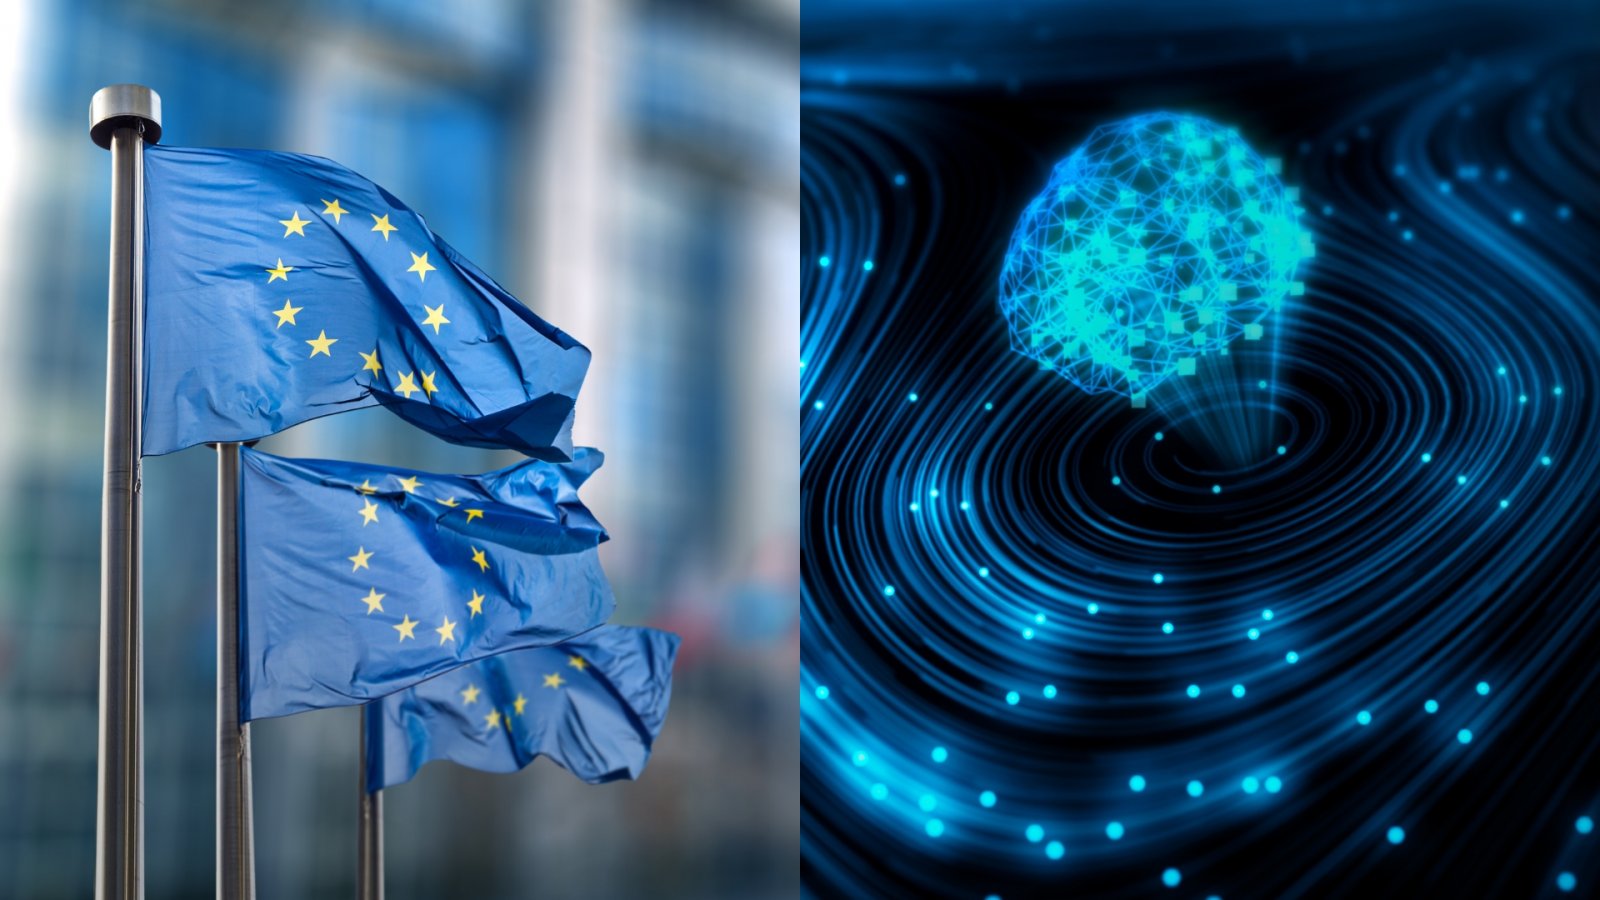 AI Act Approvato: il Parlamento Europeo detta legge sull'intelligenza artificiale tra multe e divieti